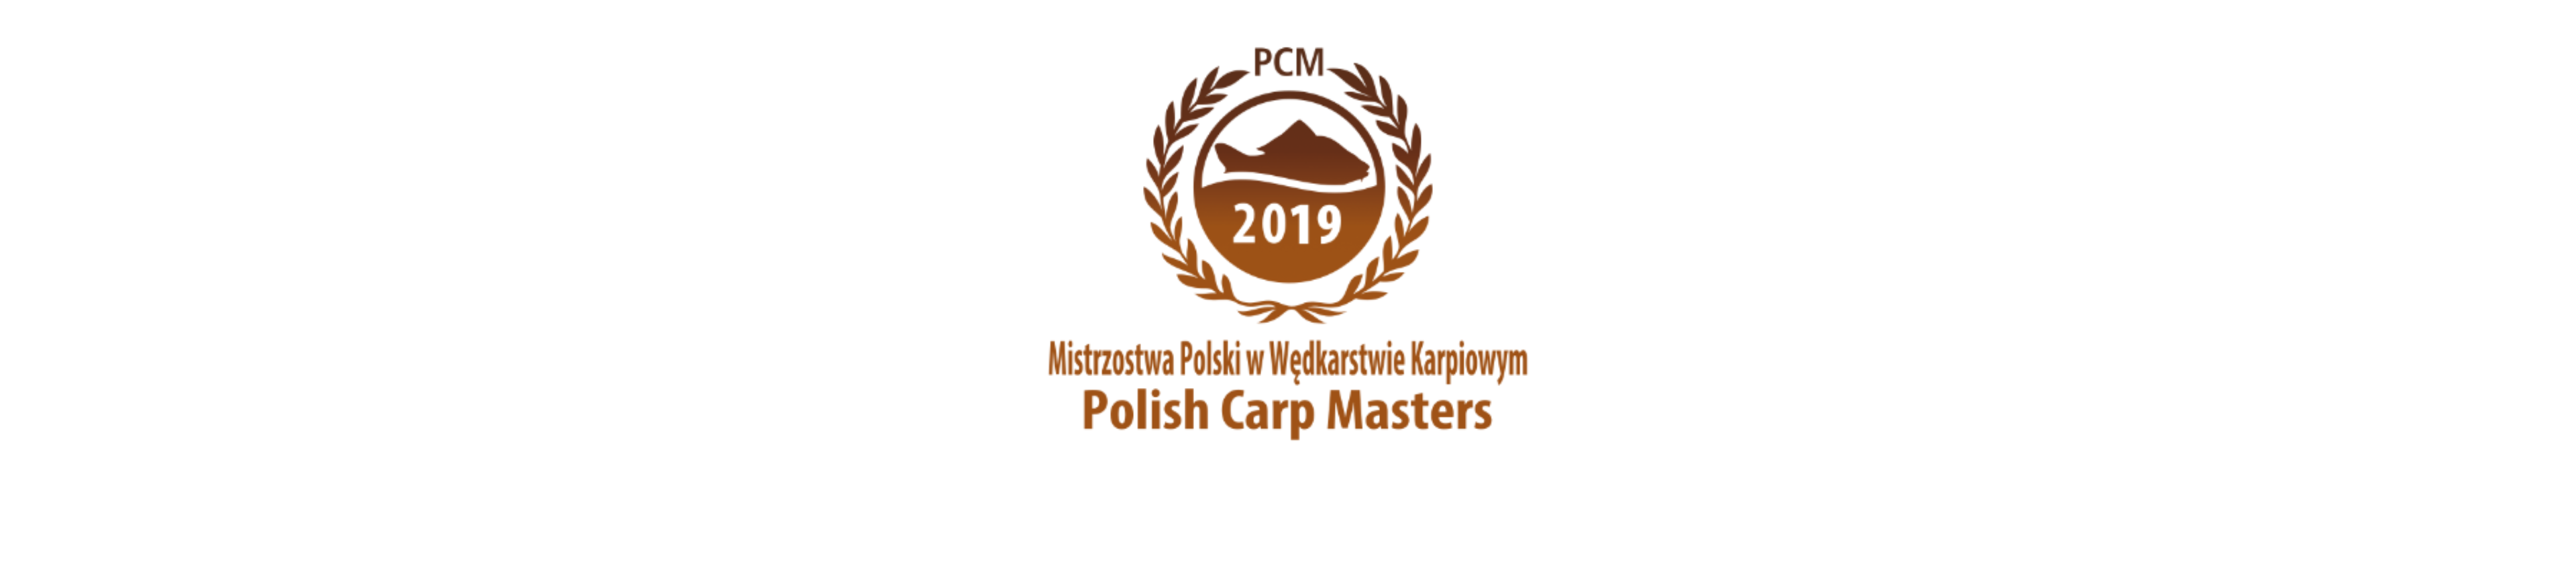 PCM 2019